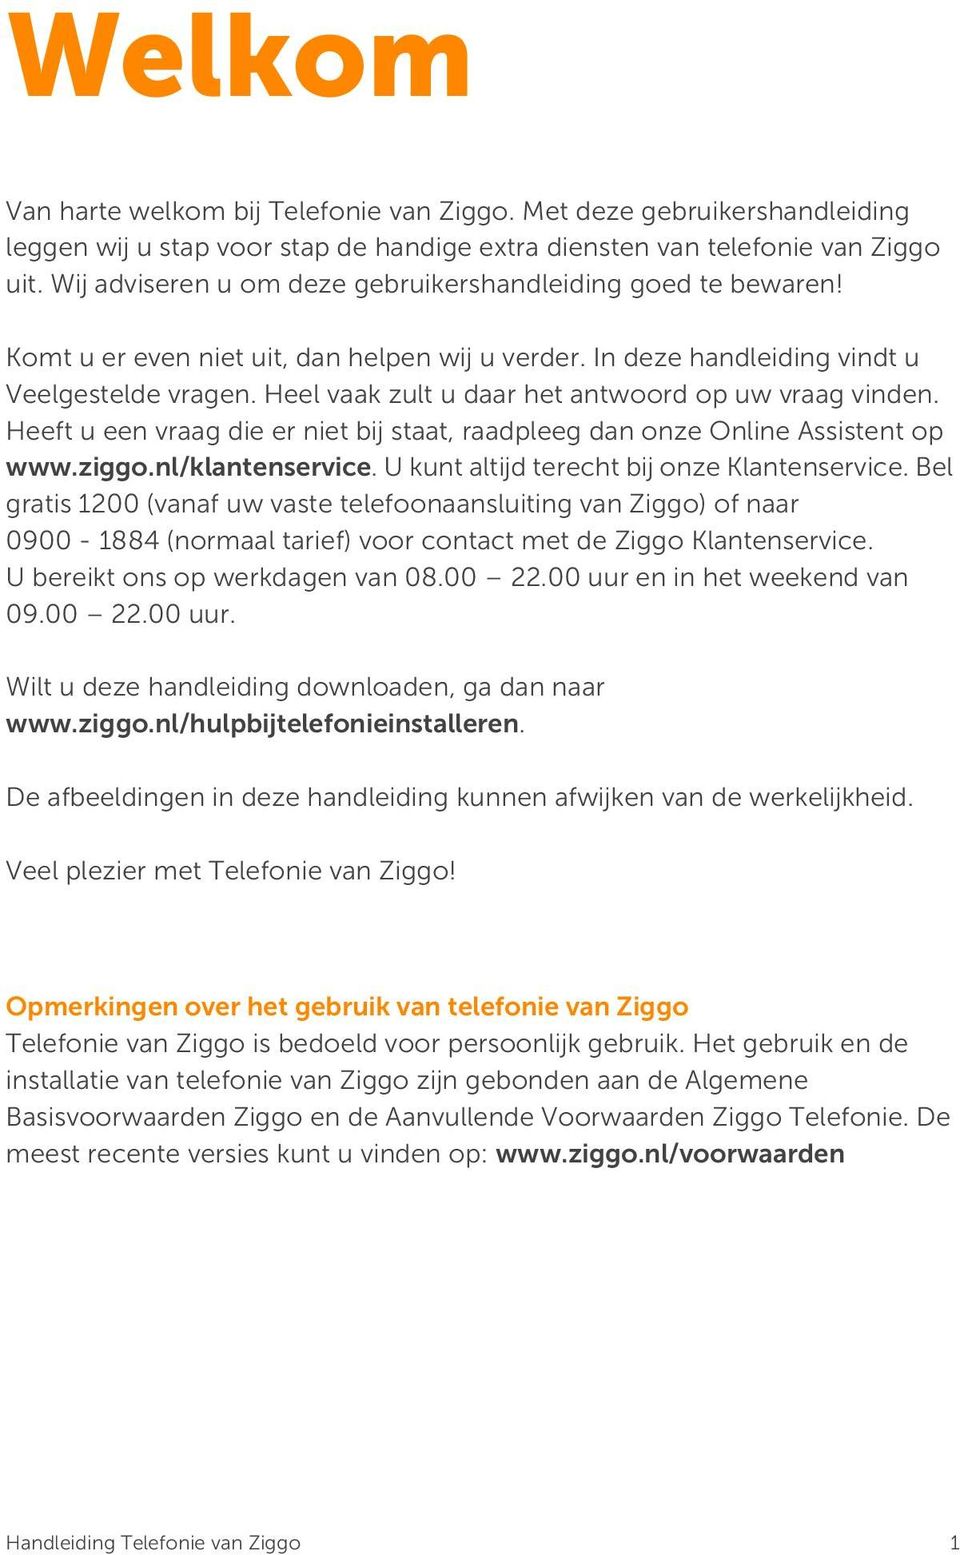 Heel vaak zult u daar het antwoord op uw vraag vinden. Heeft u een vraag die er niet bij staat, raadpleeg dan onze Online Assistent op www.ziggo.nl/klantenservice.